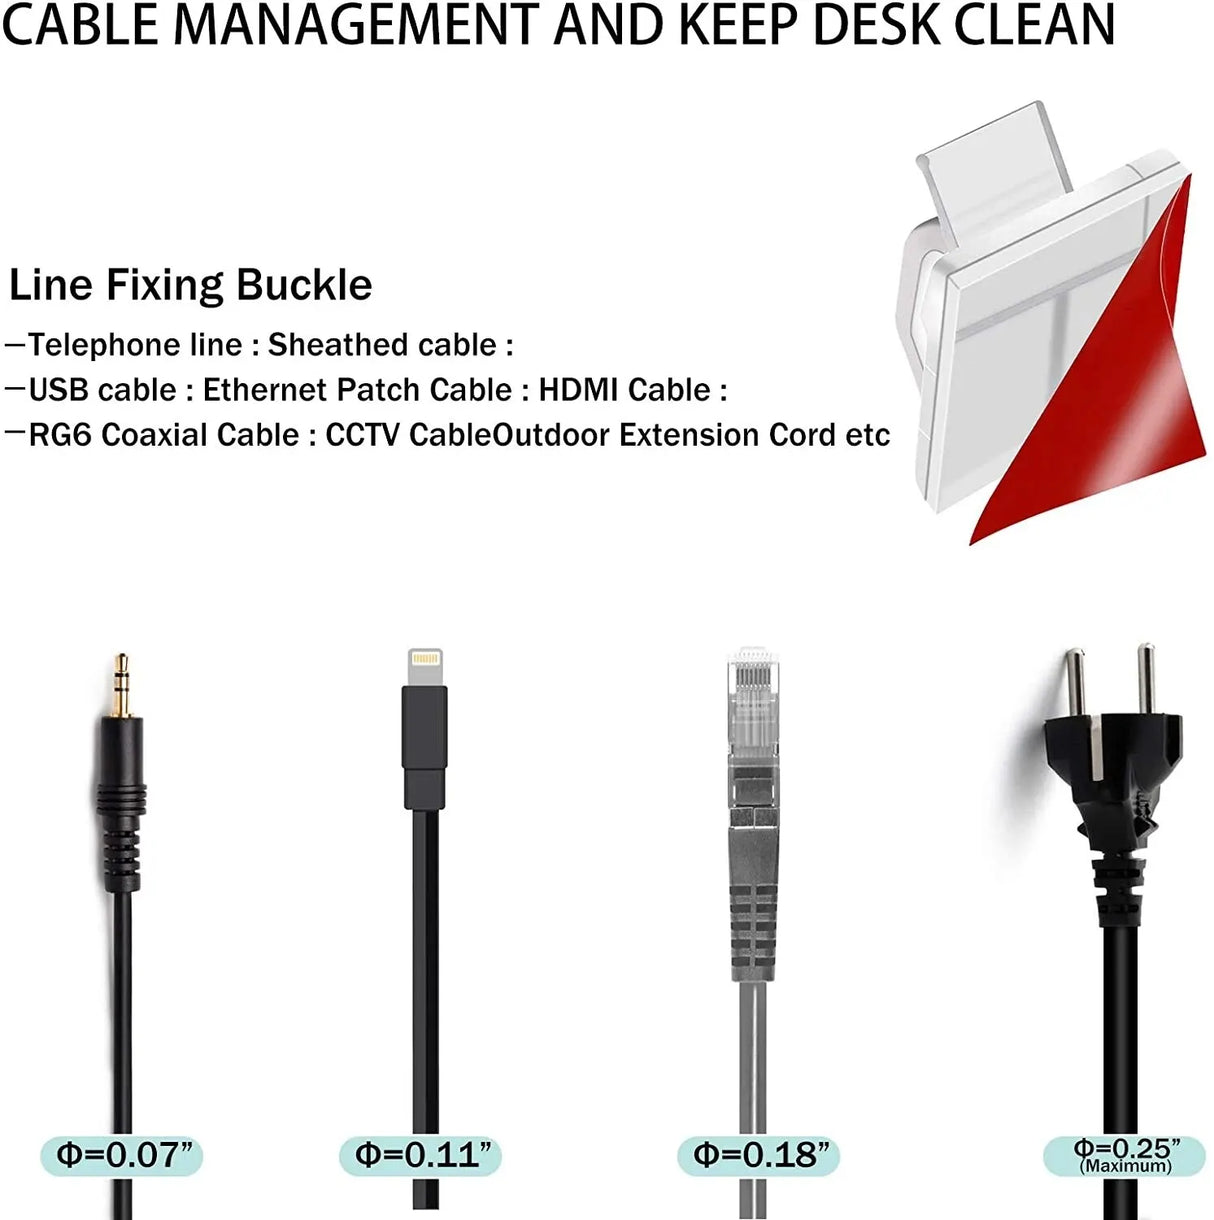 50pcs Cable Organizer Clips for Efficient Cable Management